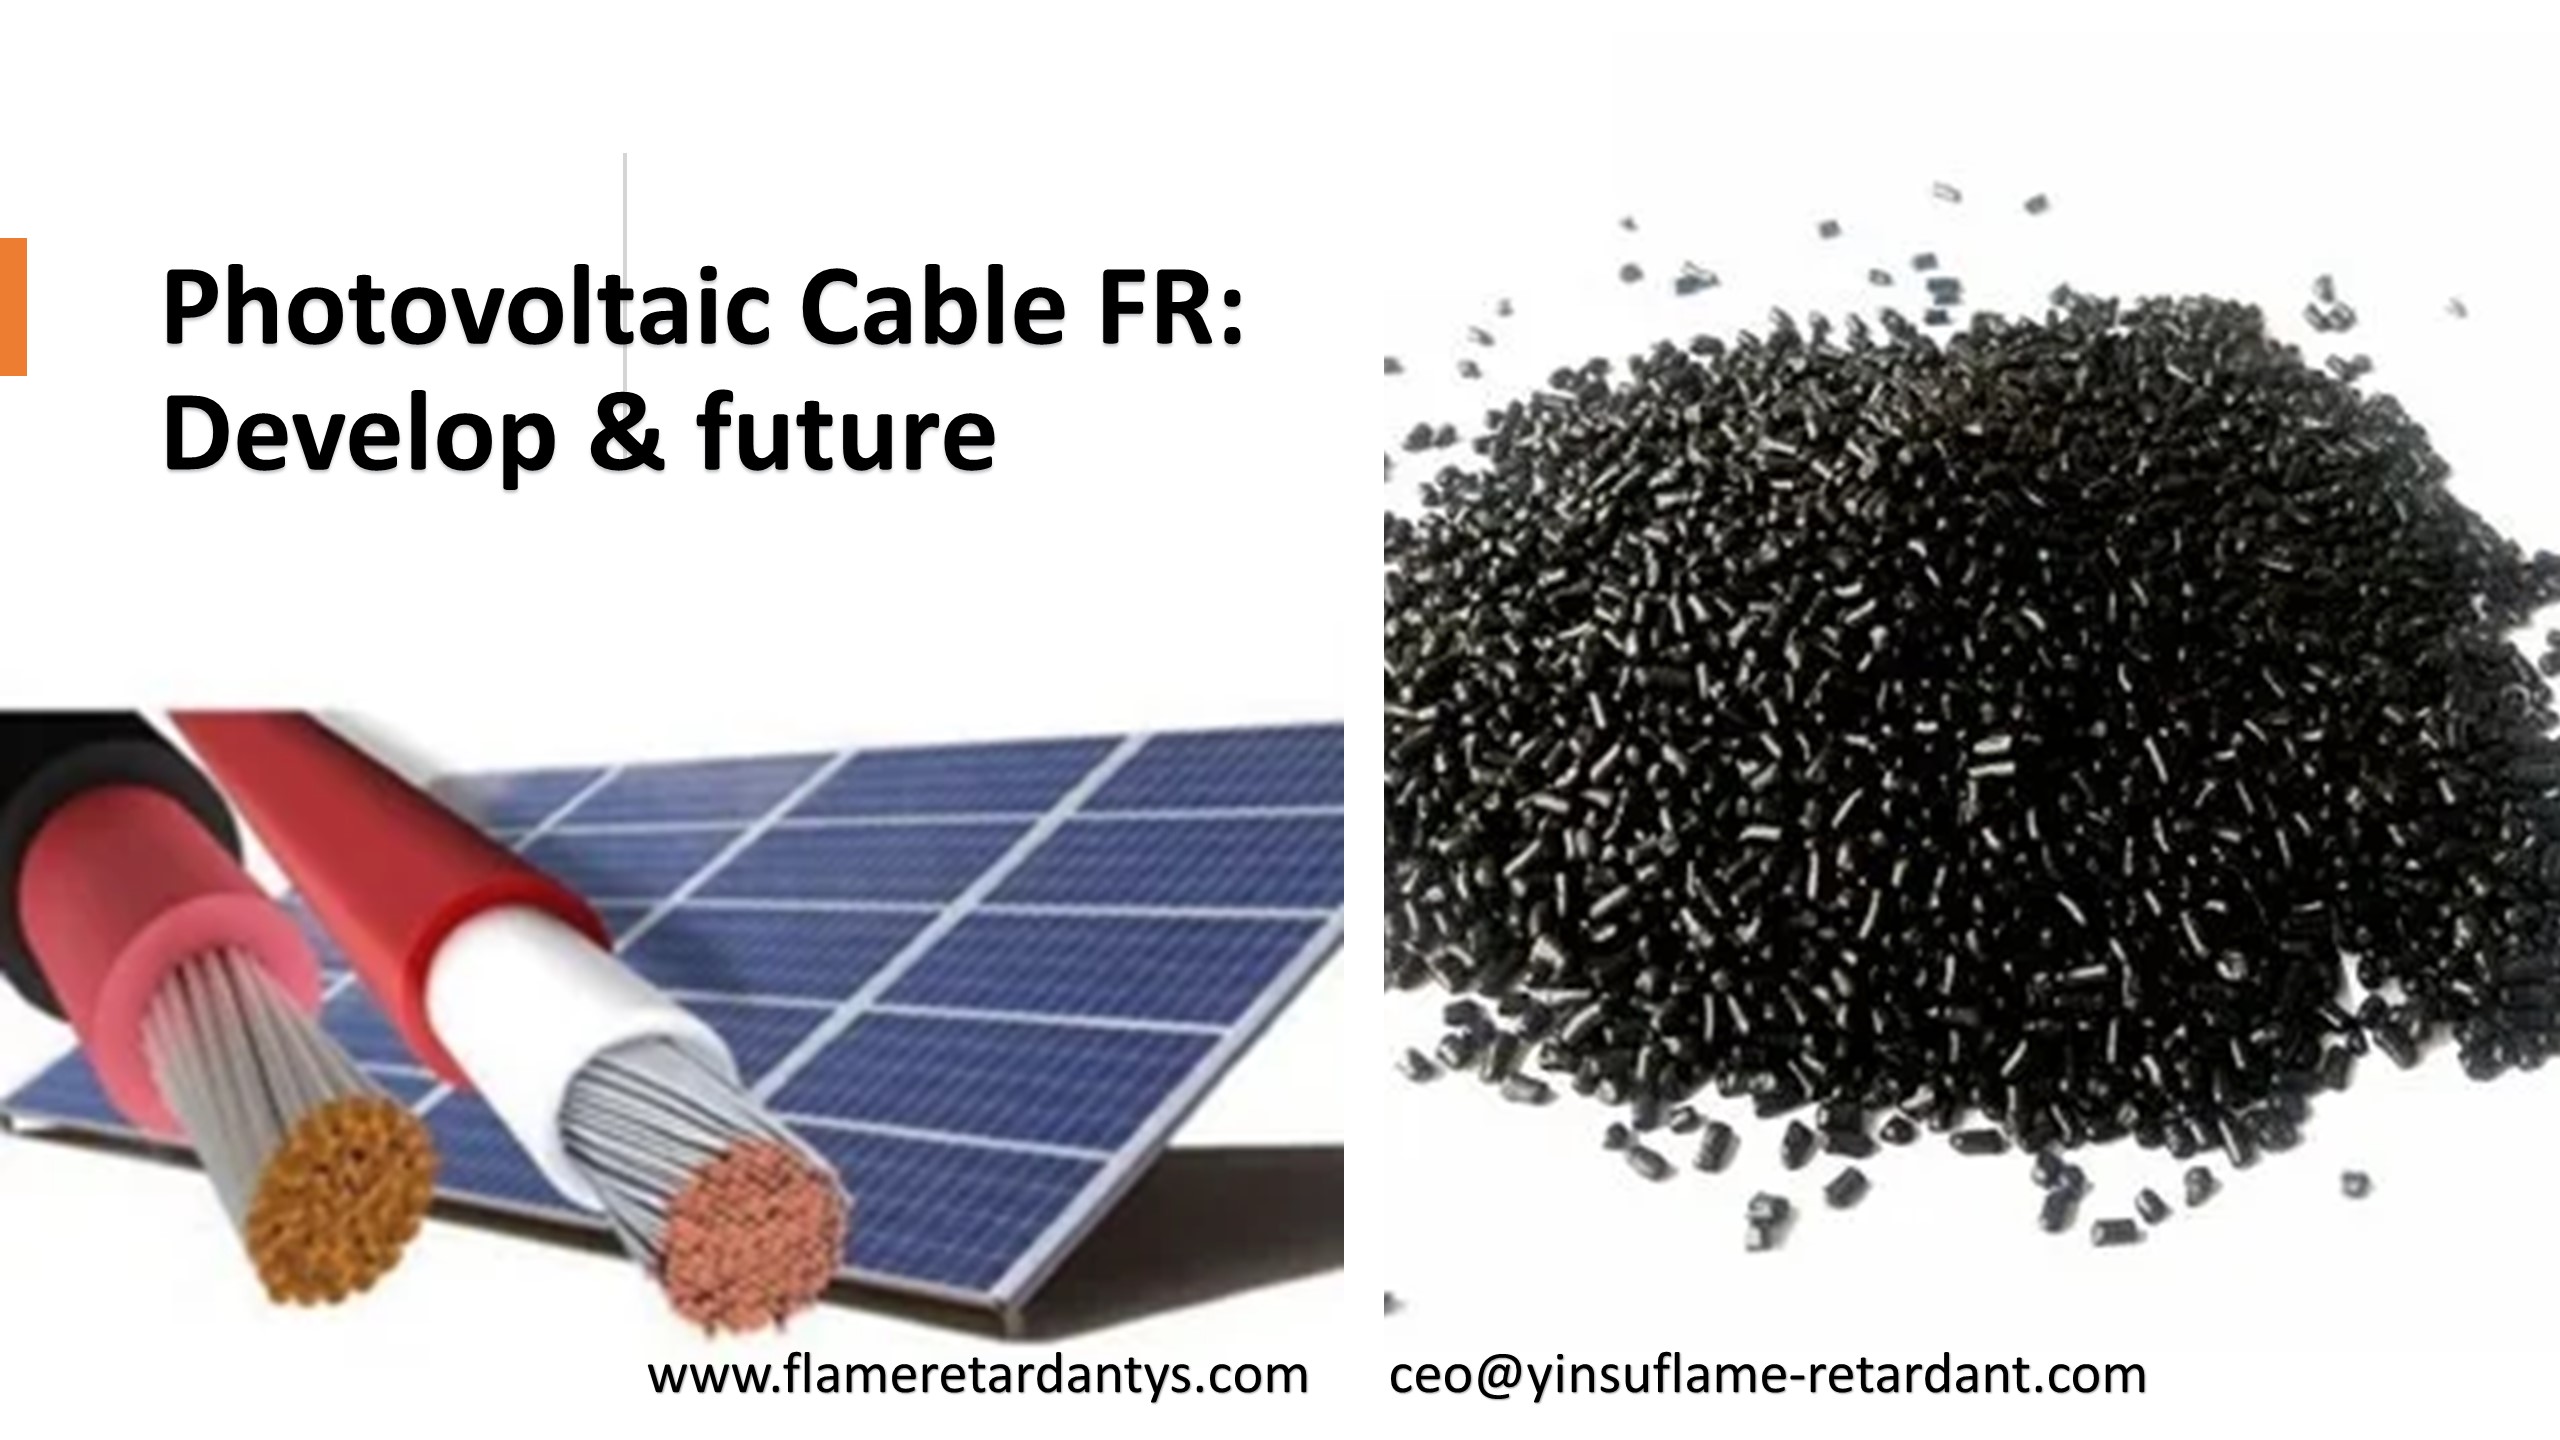 Cable Fotovoltaico FR: Desarrollo y futuro